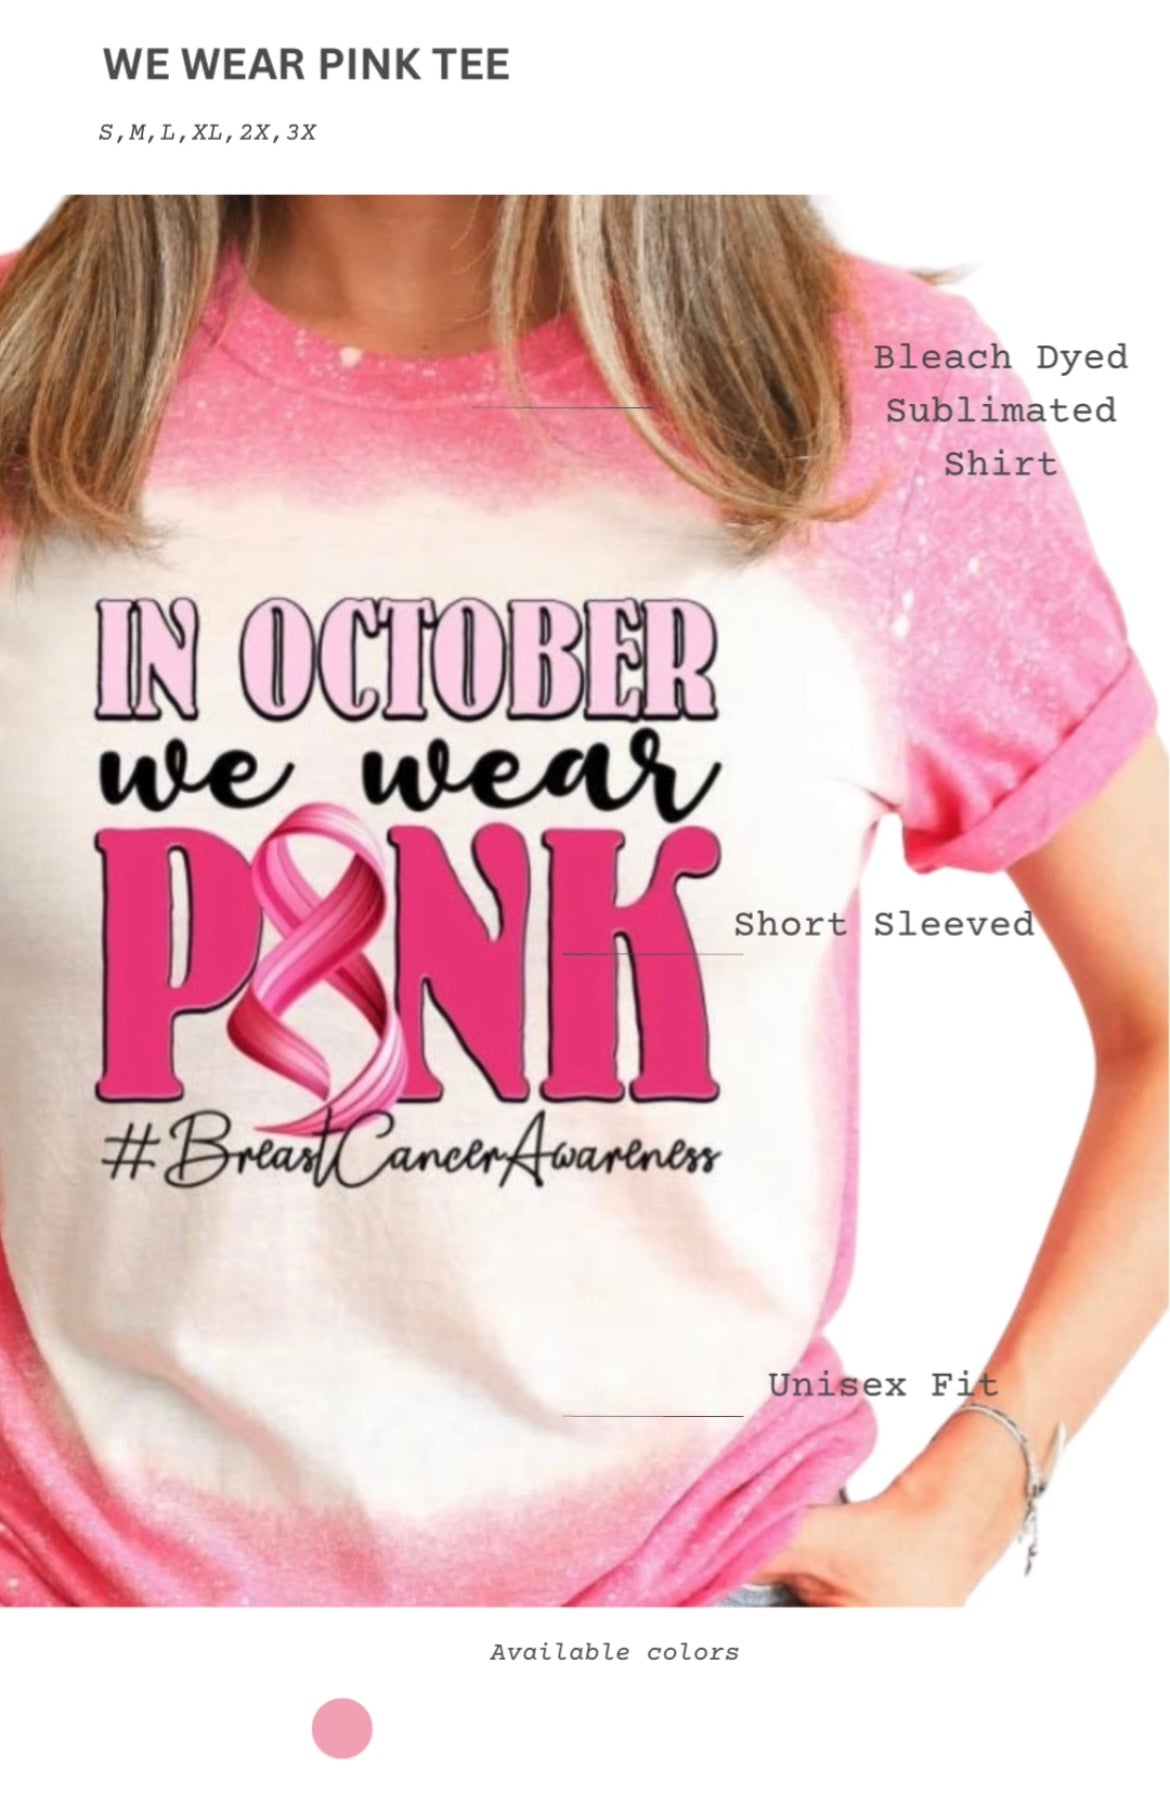 We wear pink